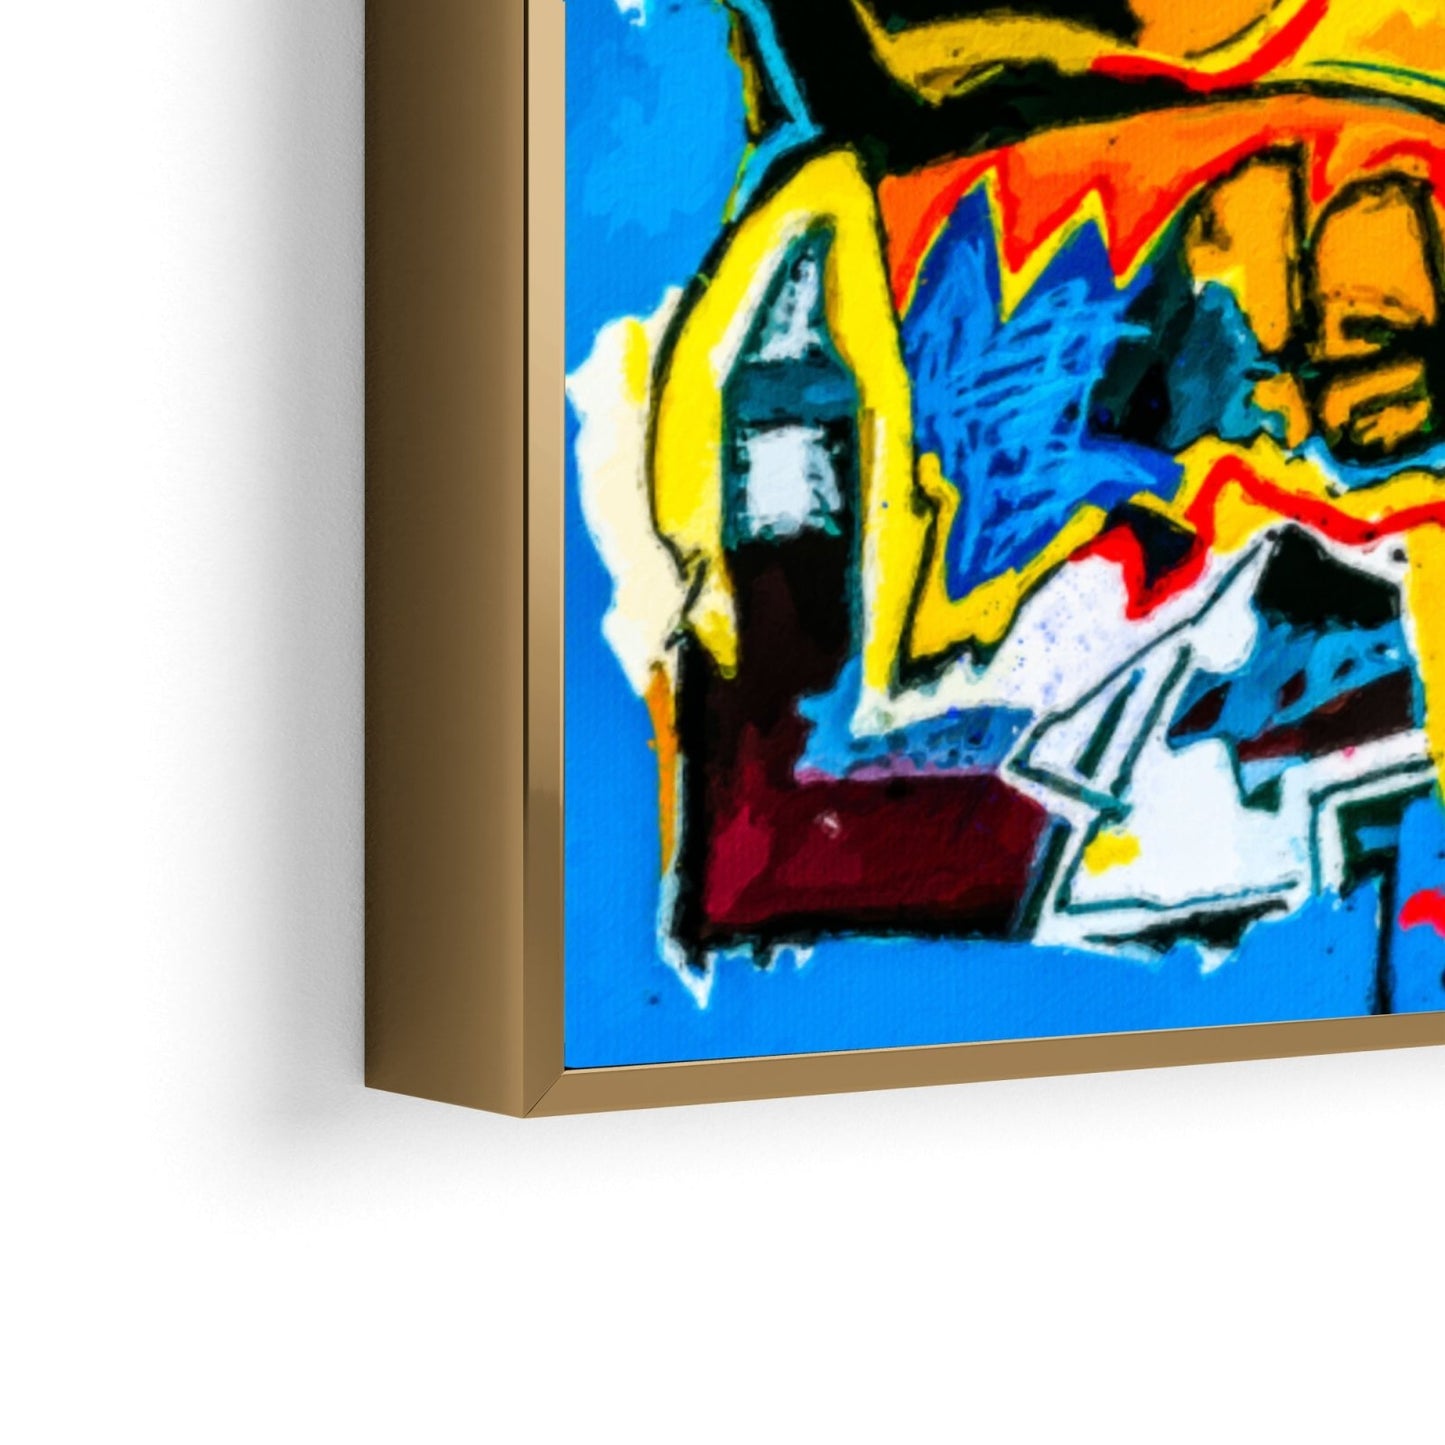 Basquiat Canvas Wall Art